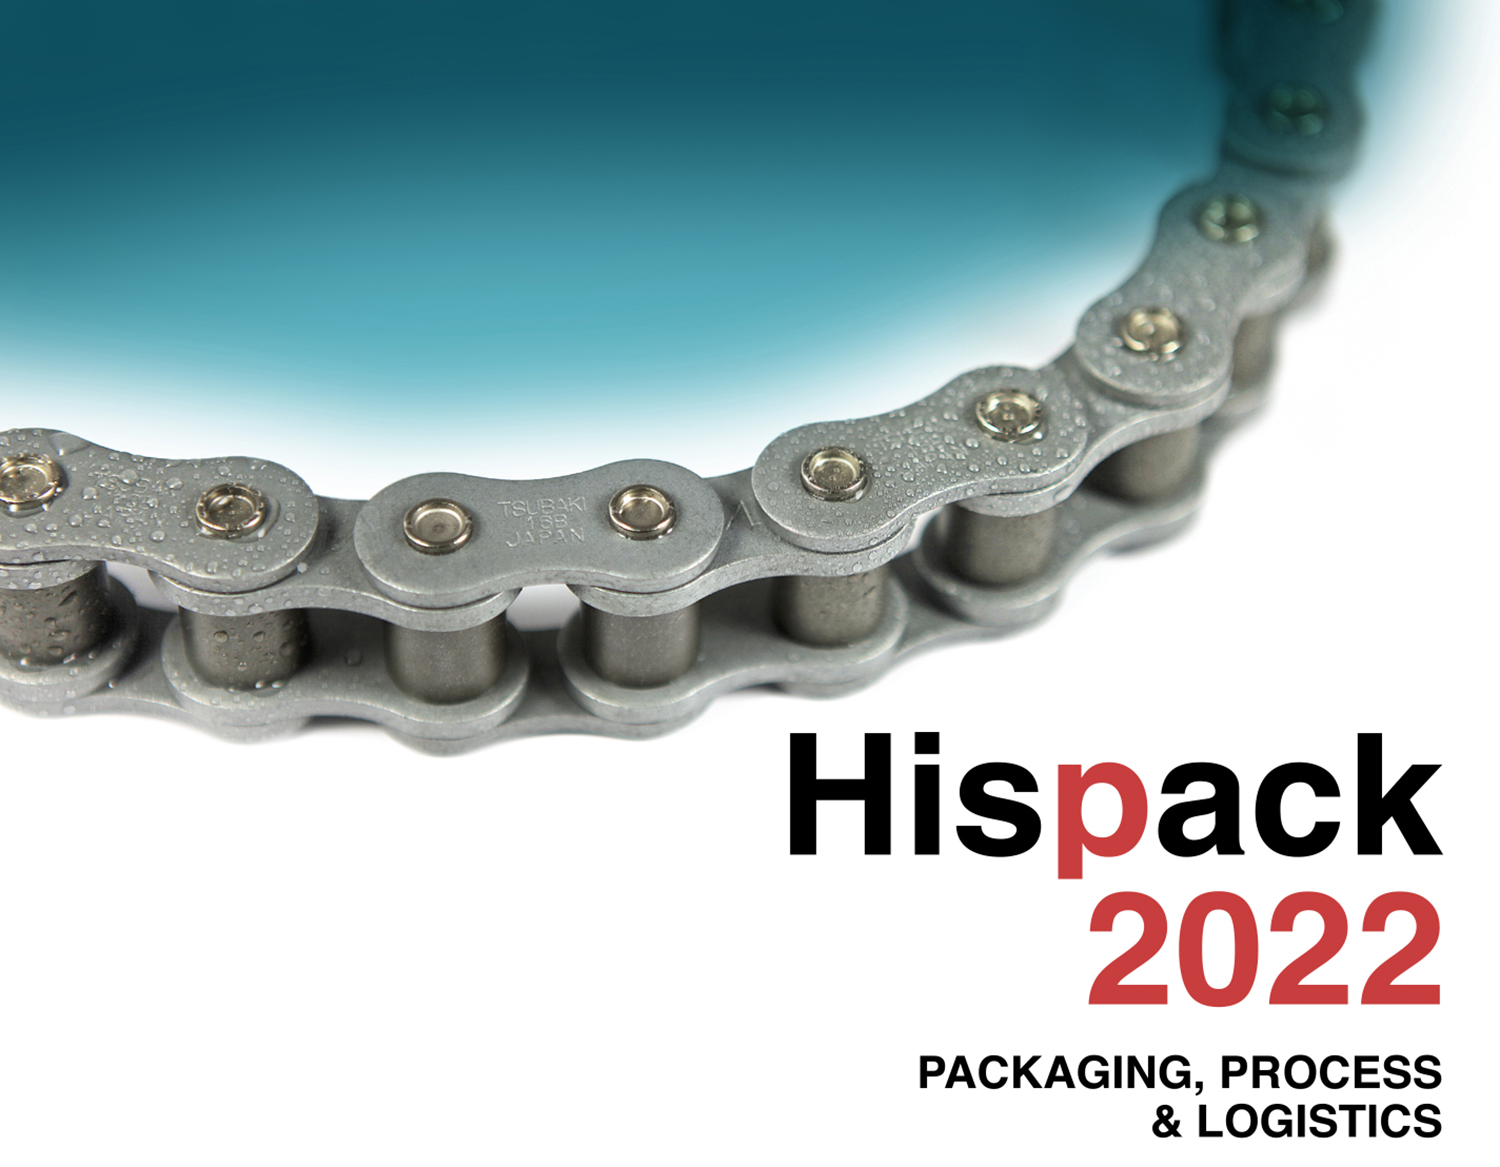 Tsubaki presenta su gama de cadenas duraderas y de larga duración para la industria del embalaje en la exposición Hispack, Barcelona, del 24 al 27 de mayo.